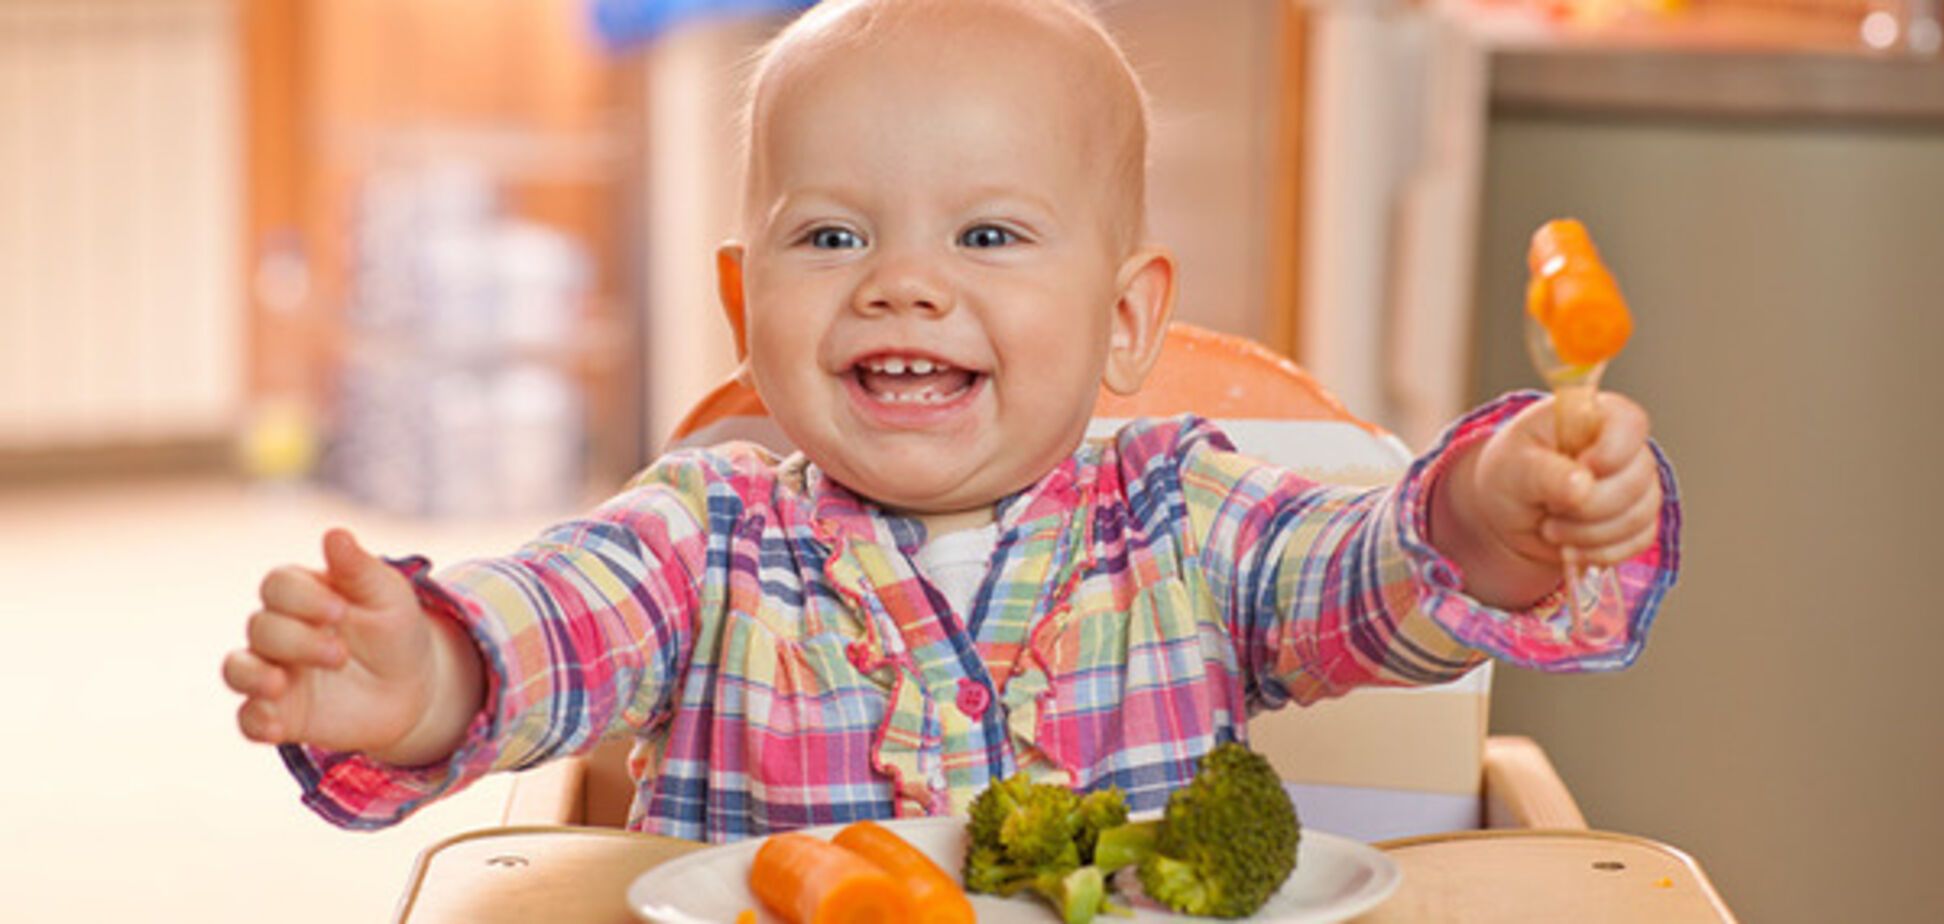 Не заставляйте есть: психолог рассказала, как привить ребенку любовь к здоровой пище